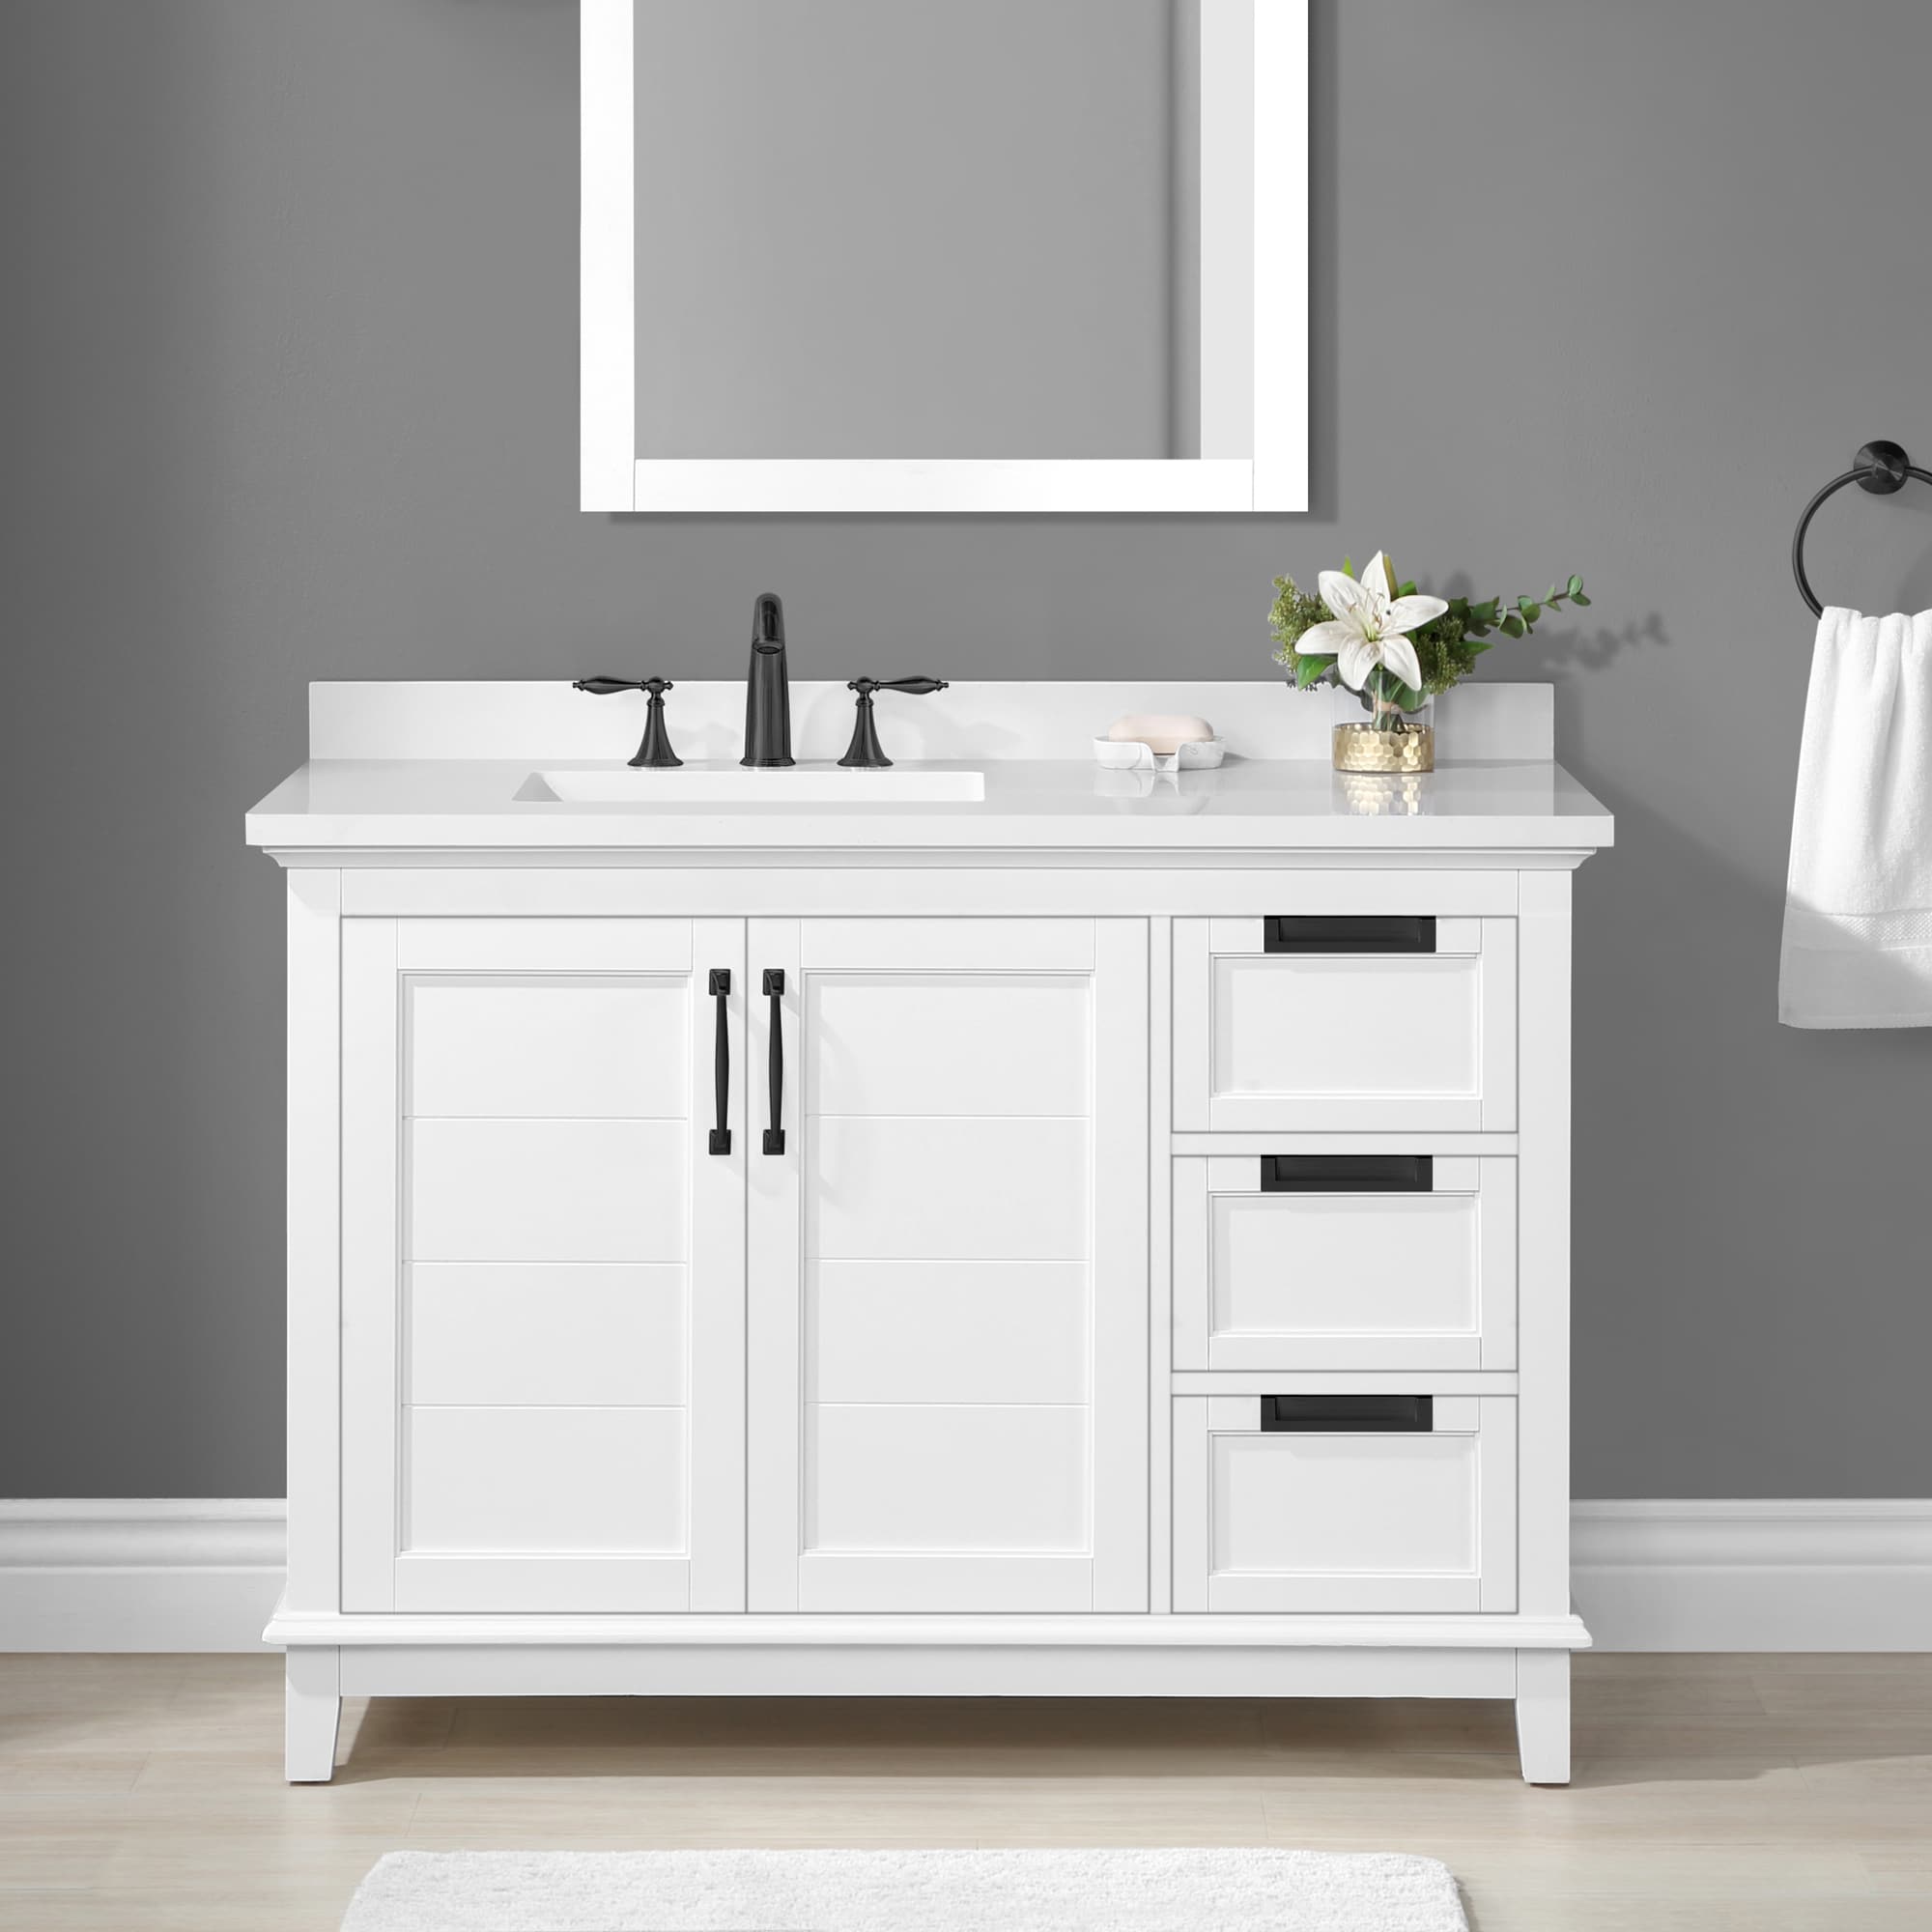 allen + roth clarita 48-in white undermount single sink bathroom